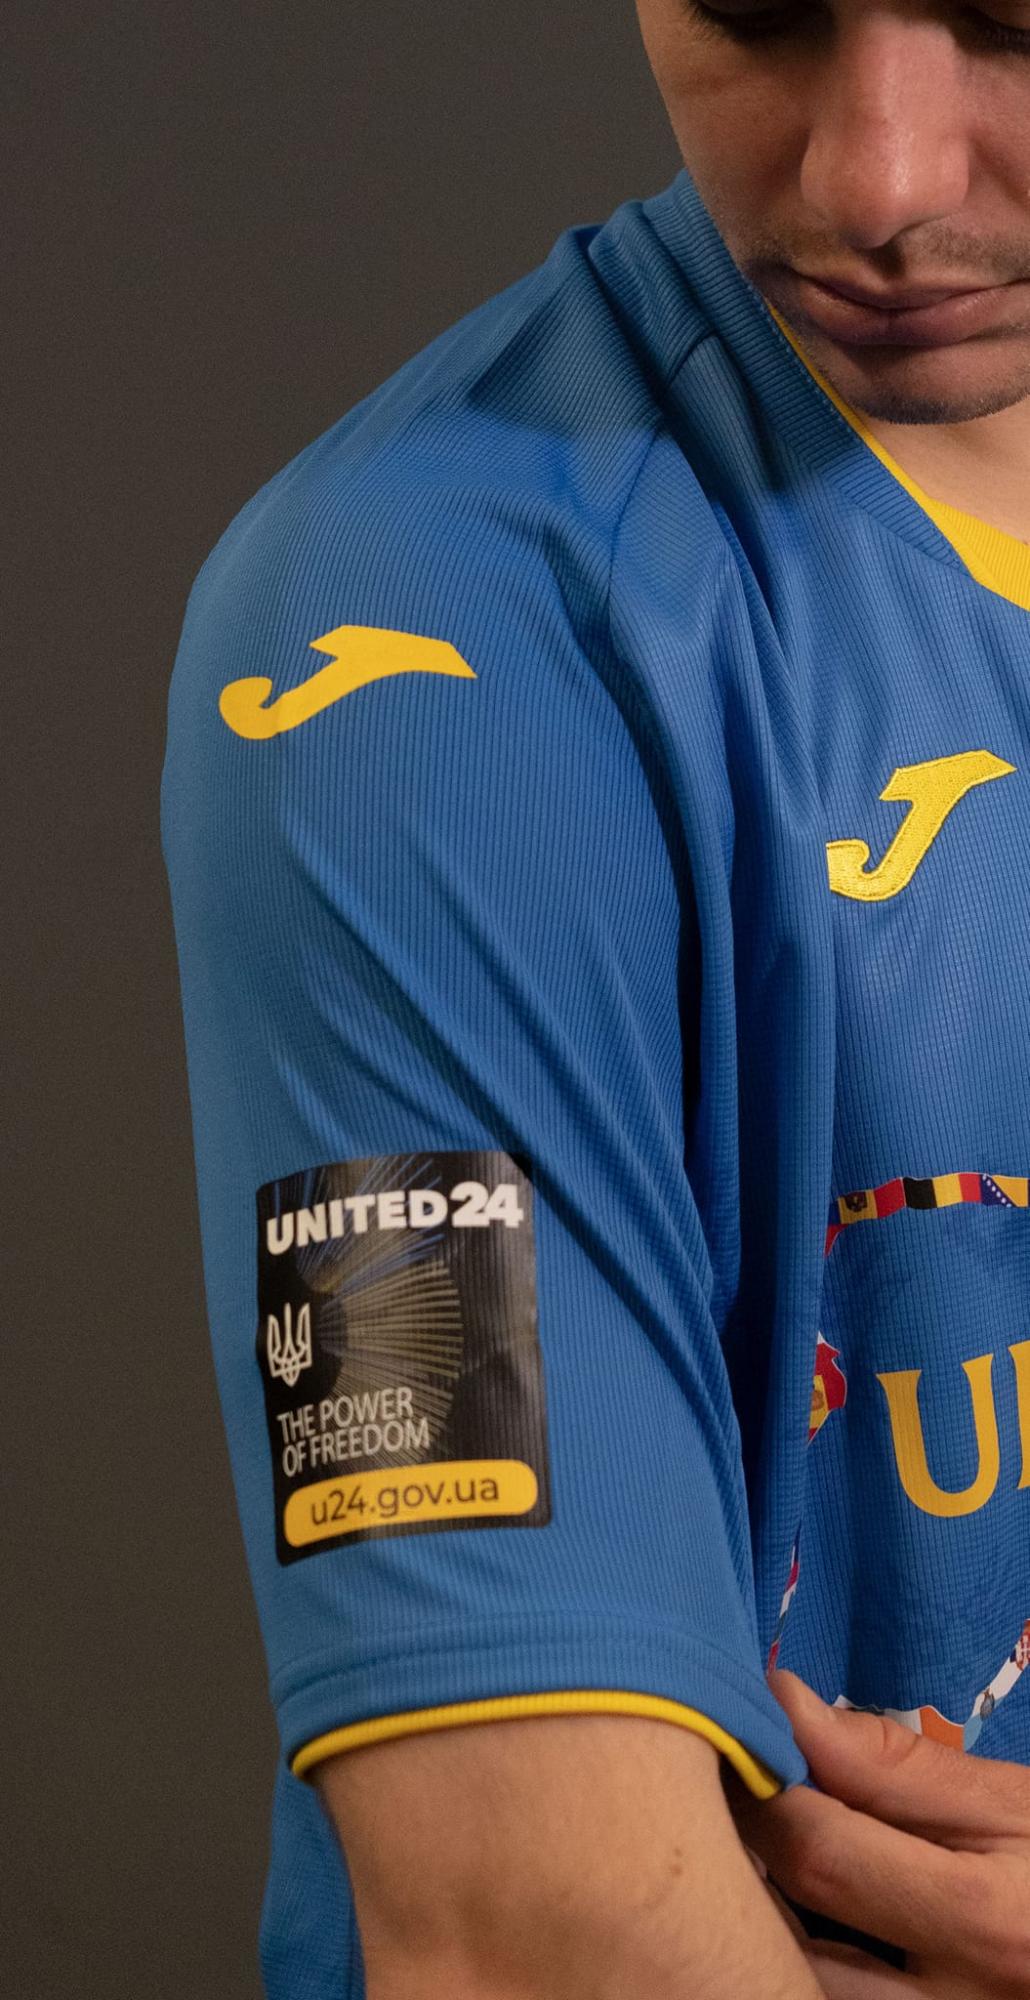 Сборная Украины по футболу представила лимитированную коллекцию новой формы: как она выглядит